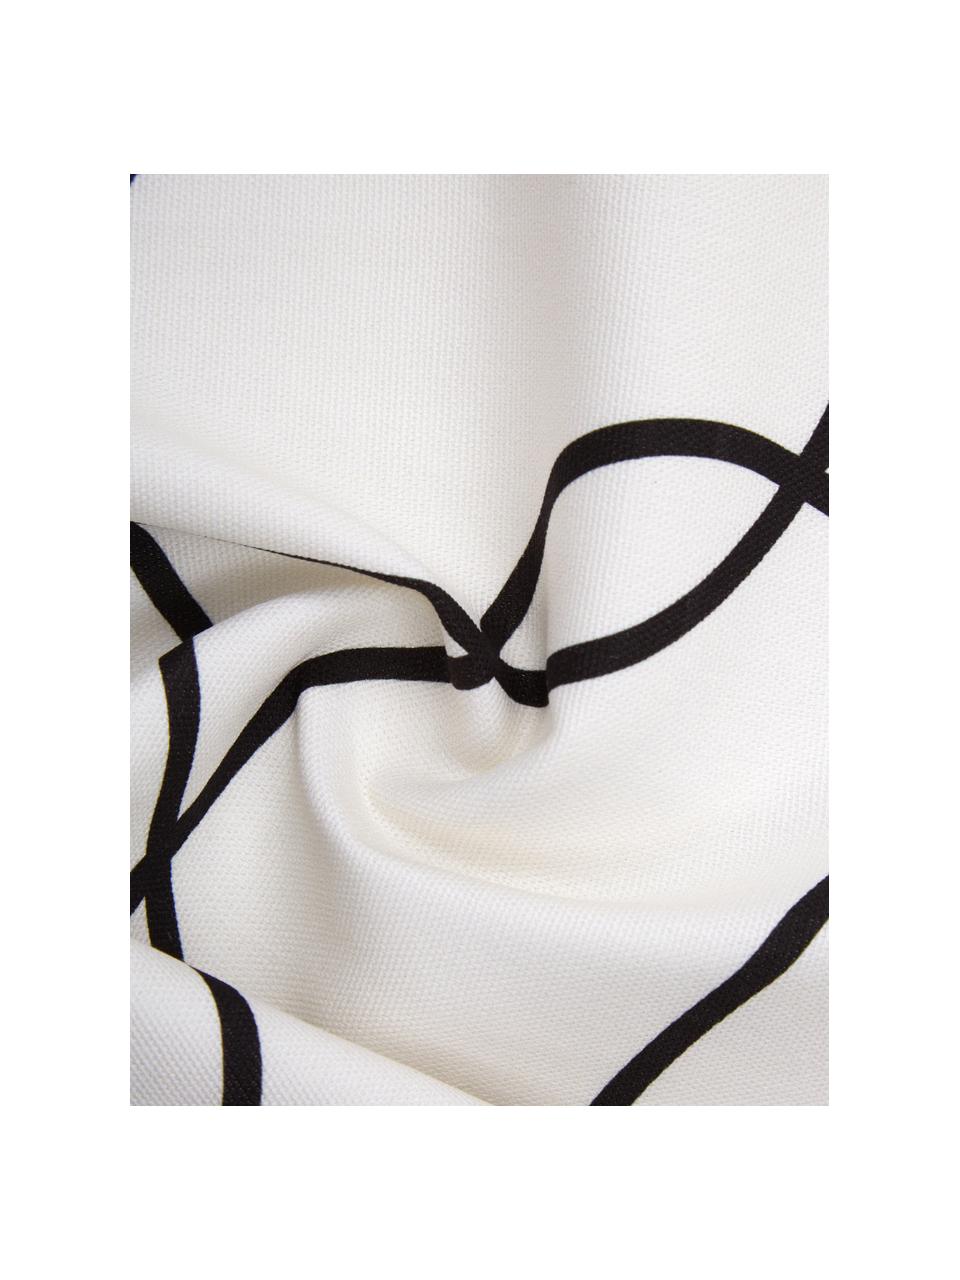 Kissenhülle Laleh mit abstraktem Print aus Bio-Baumwolle, 100% Bio-Baumwolle, GOTS-zertifiziert, Cremeweiss, Schwarz, B 45 x L 45 cm